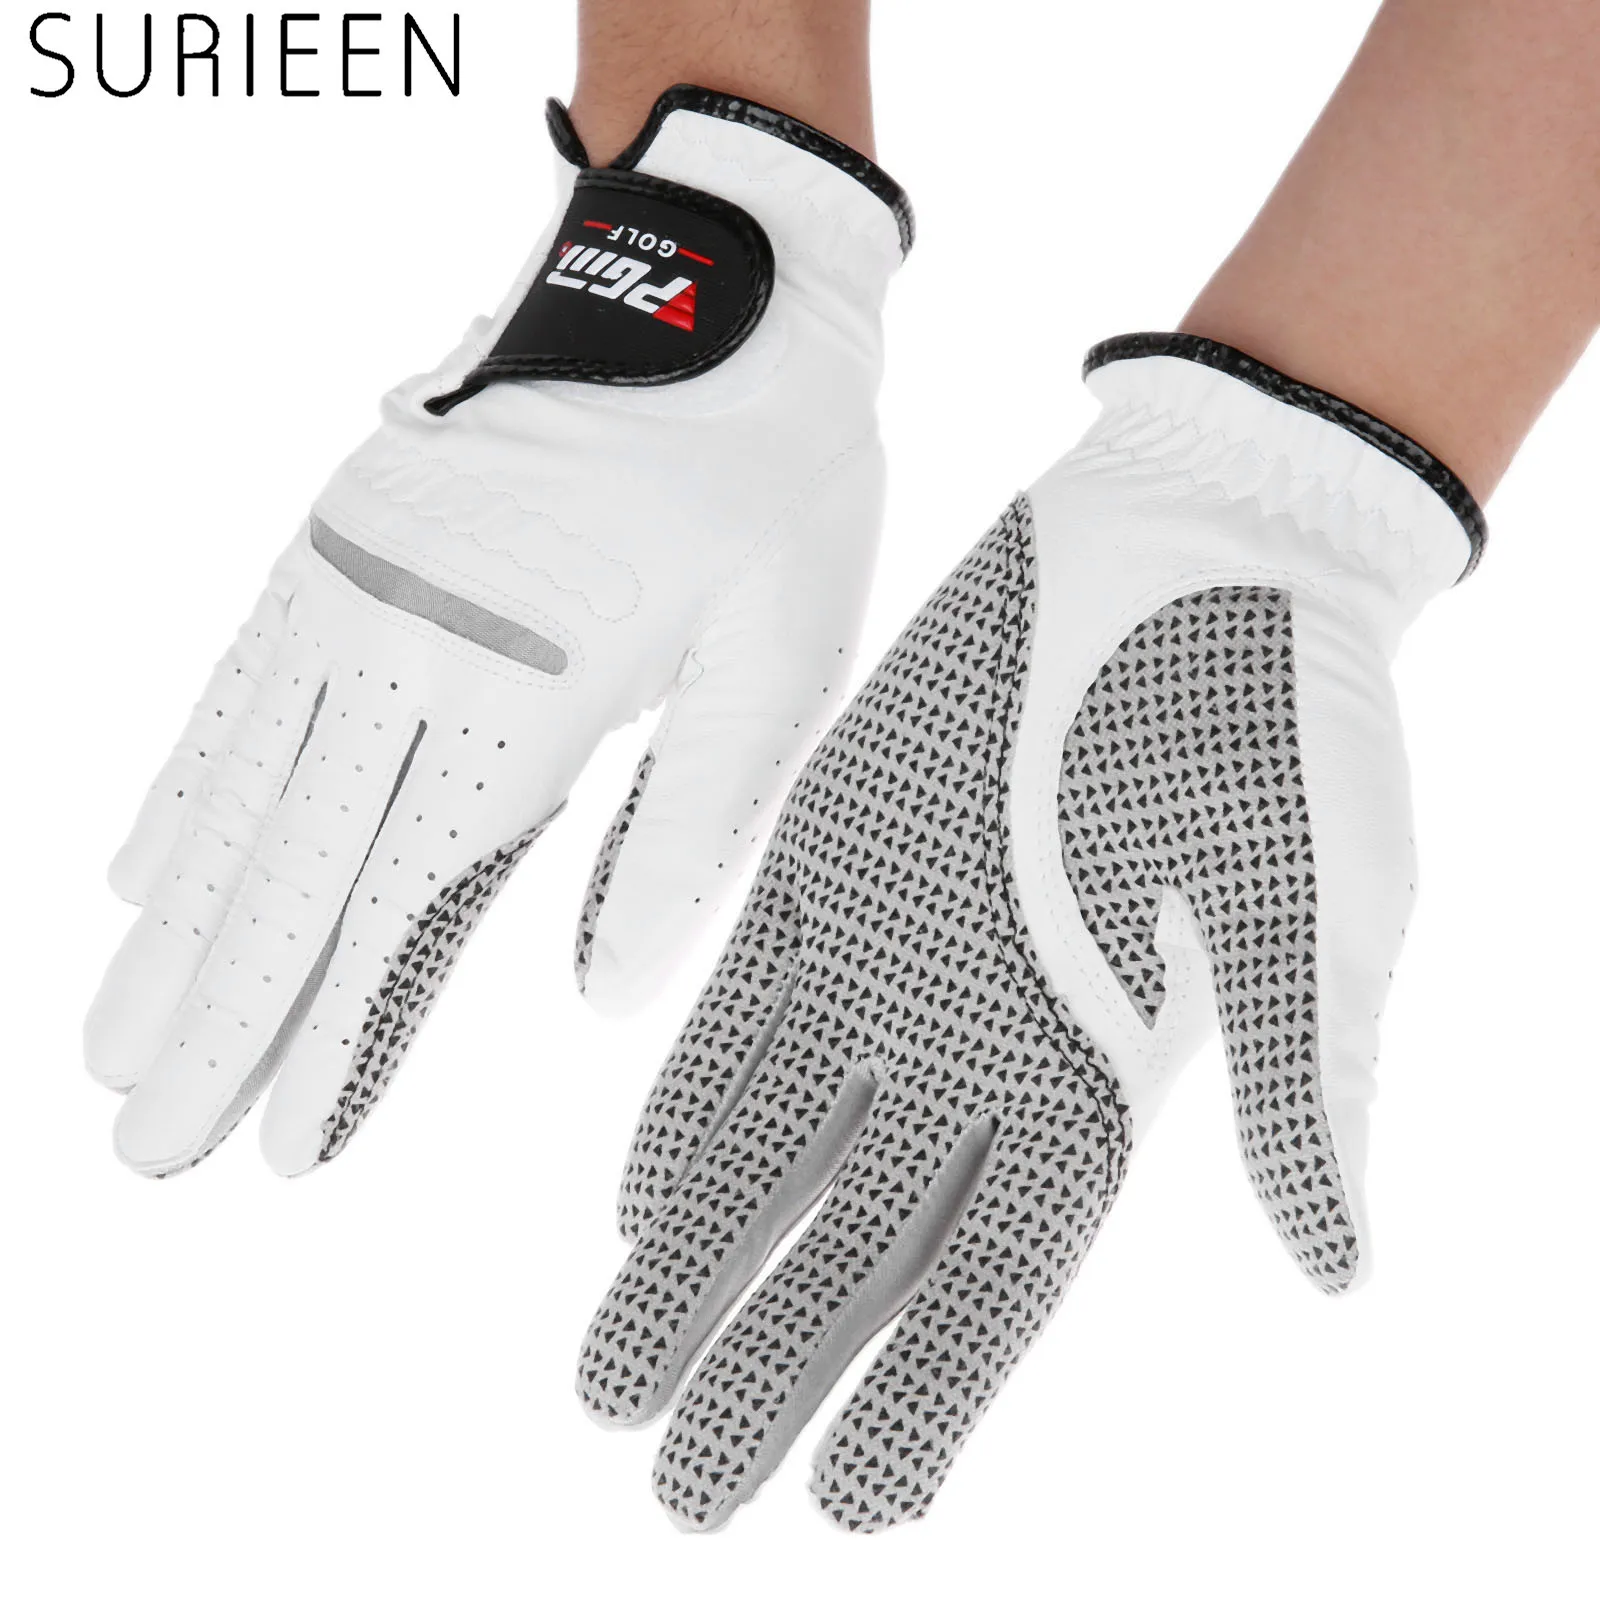 SURIEEN Cabretta кожаные перчатки для гольфа мужские левая и правая рука мягкая дышащая овчина противоскользящие мужские перчатки для гольфа спортивные